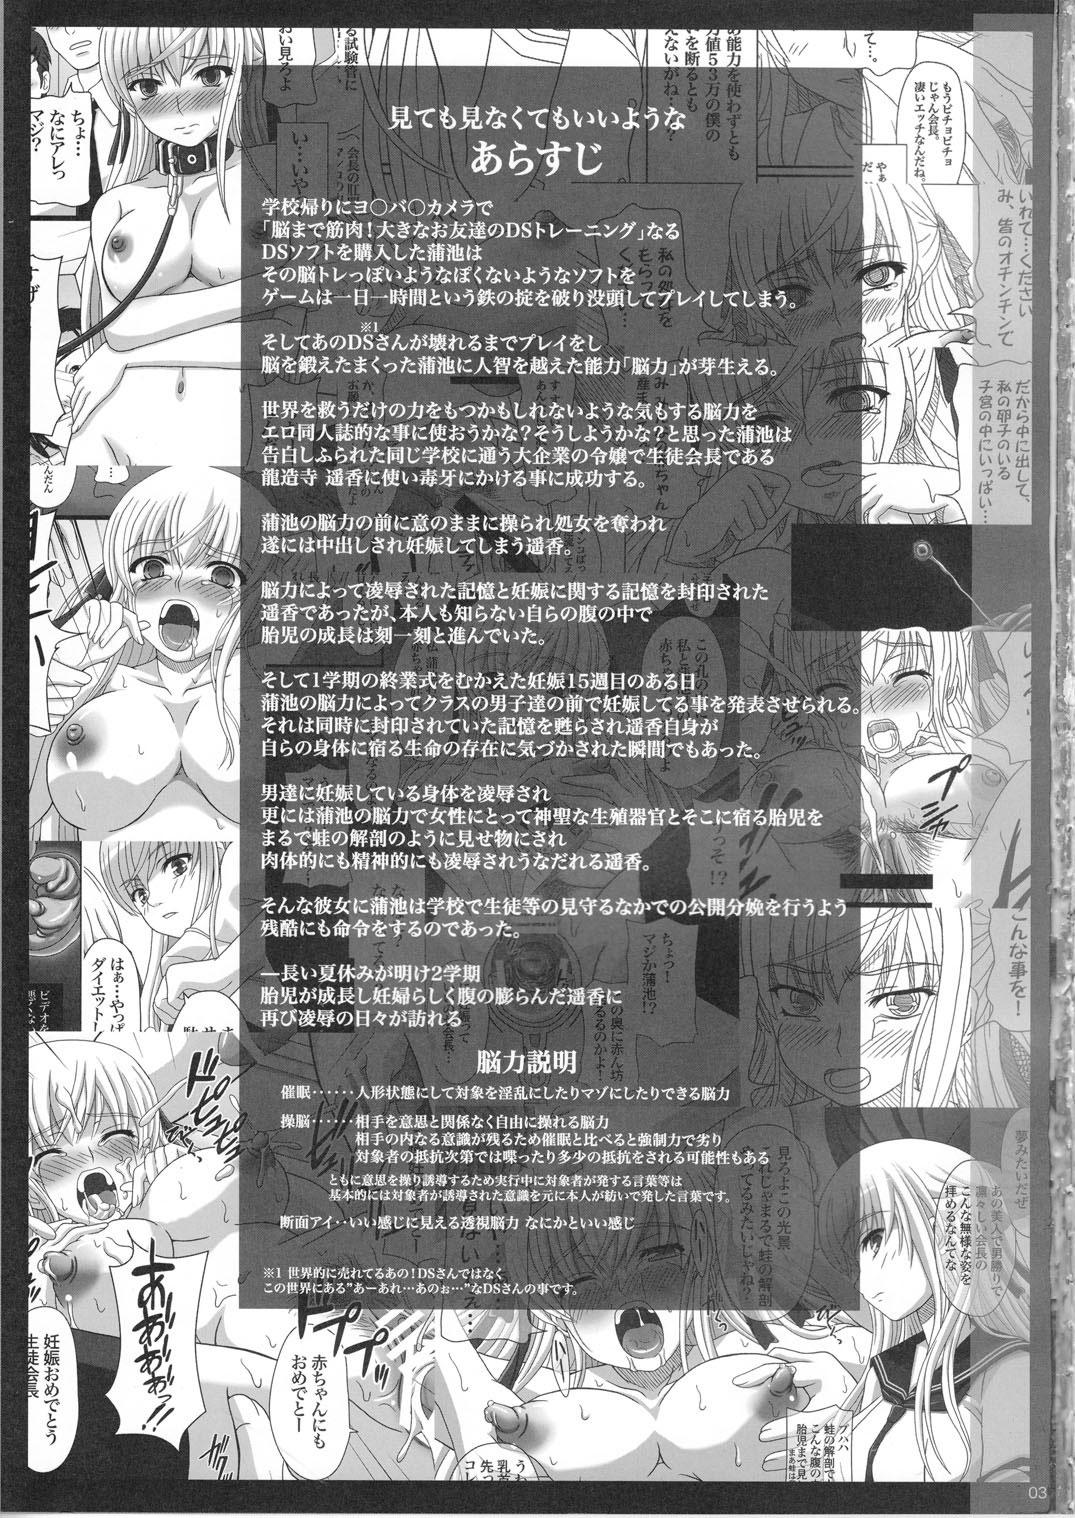 Rimjob Katashibu 25-shuu HD - Page 3